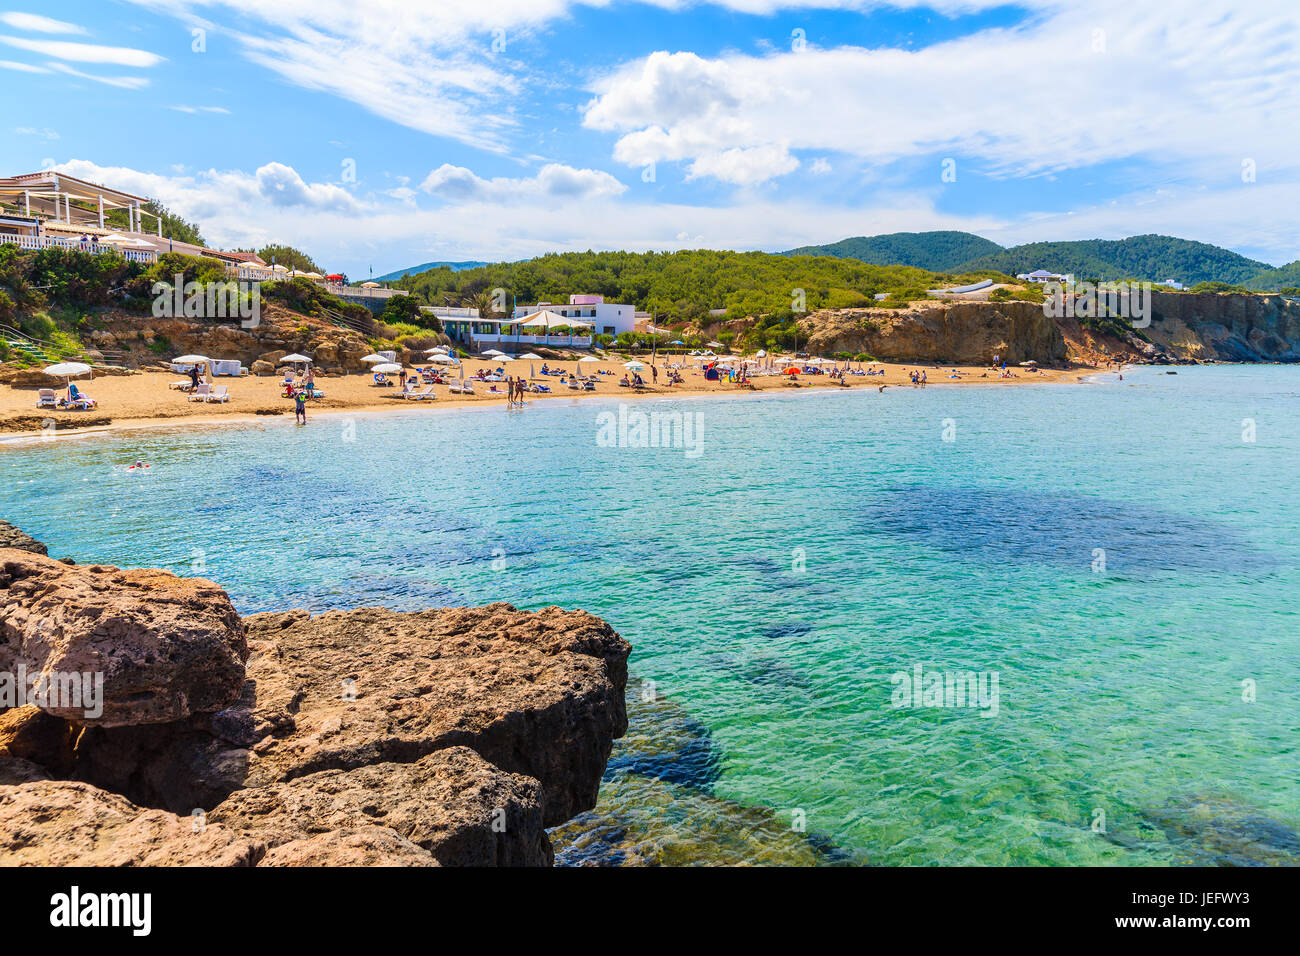 Vista della spiaggia in sabbia di Es Figueral beach con i turisti a prendere il sole, isola di Ibiza, Spagna Foto Stock